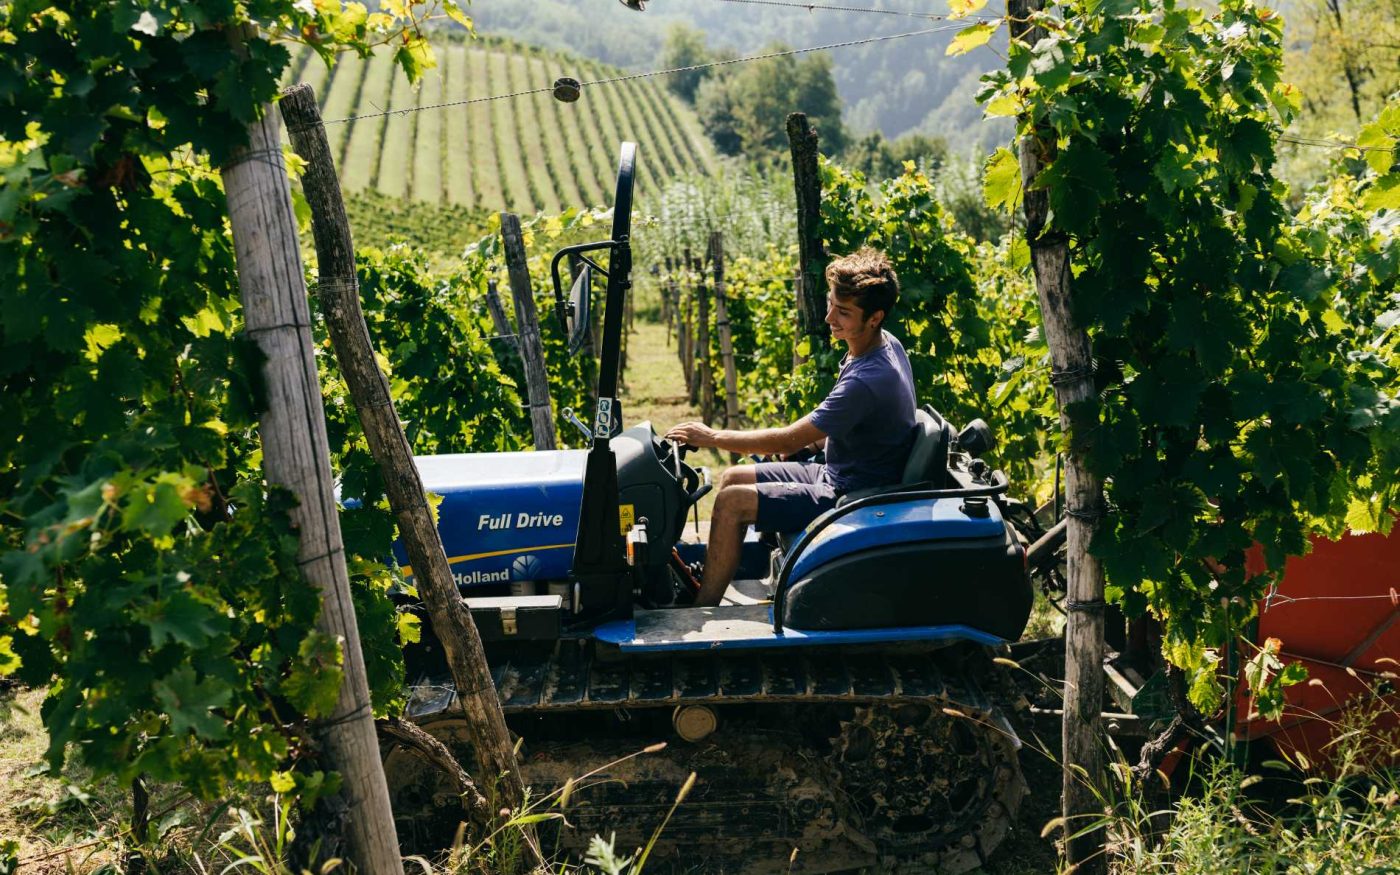 Manual labor and modern methods coexist in vineyard work